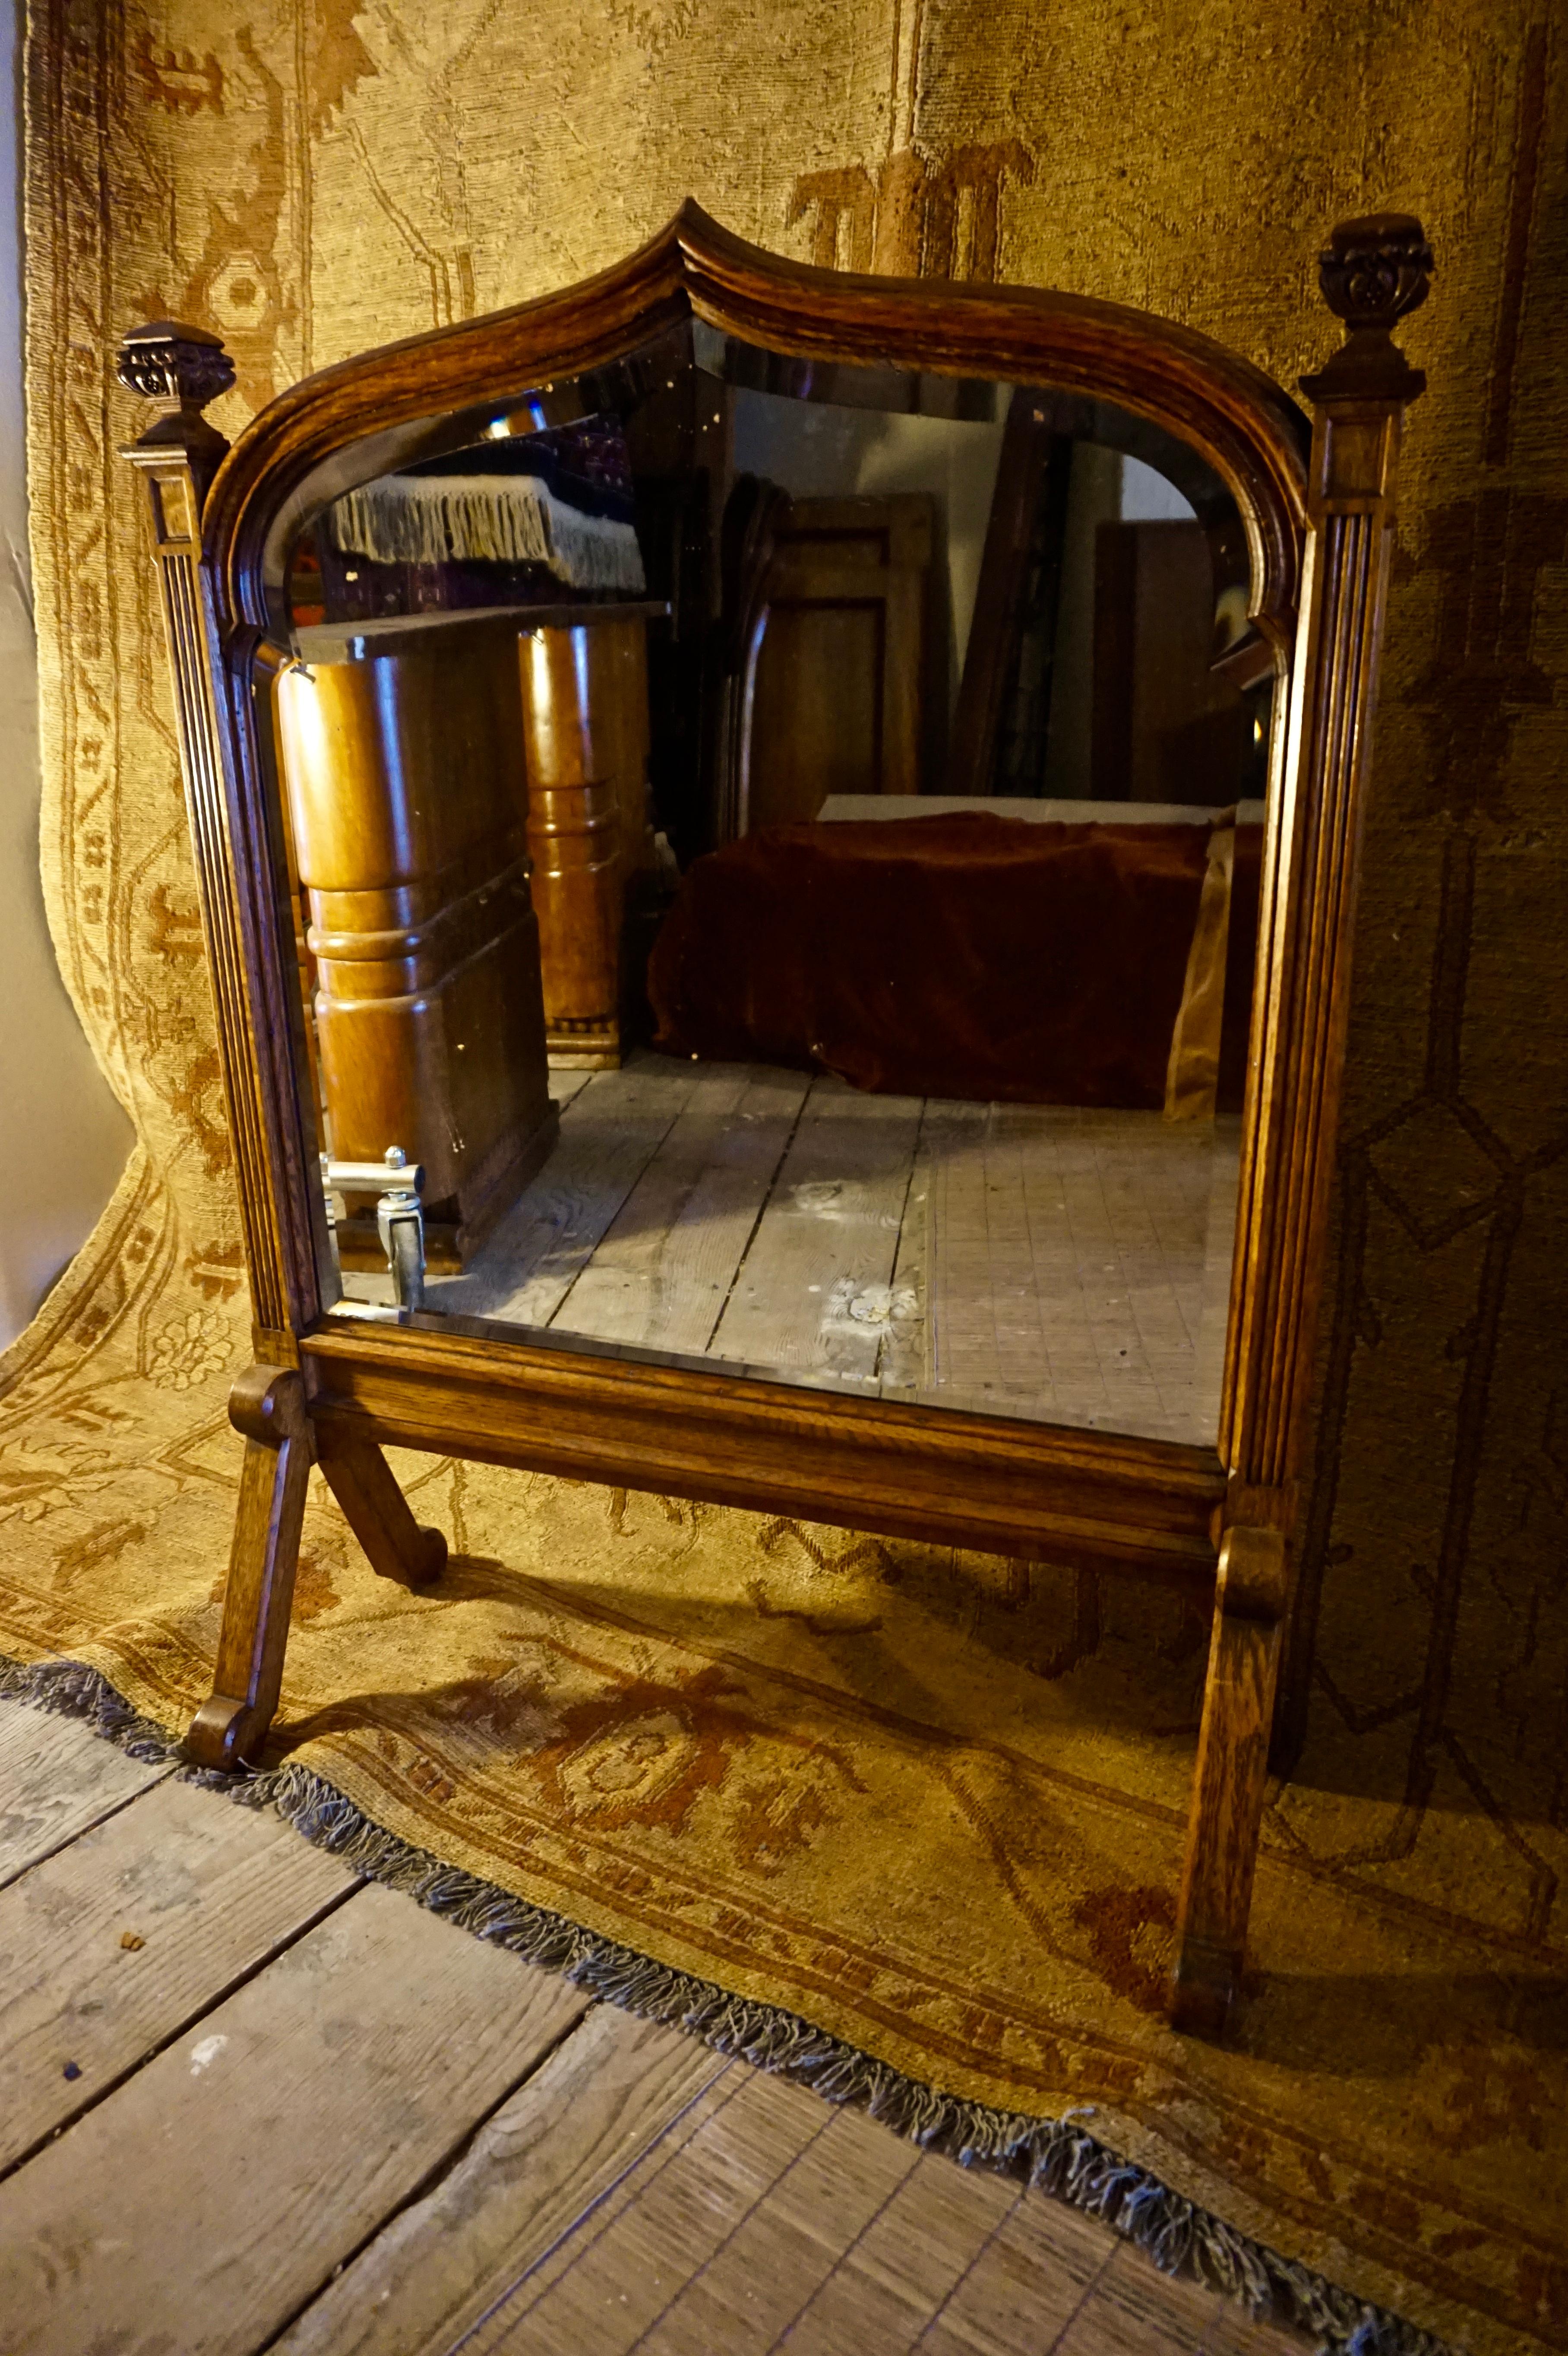 Seltener gotischer Spiegel auf Beinen mit einzigartiger Schildform und Endstücken. Mit Blei hinterlegtes Original-Schrägglas intakt. Schöne Patina und Größe mit schöner Aufmerksamkeit für subtile Details,

ca. 1860er Jahre.